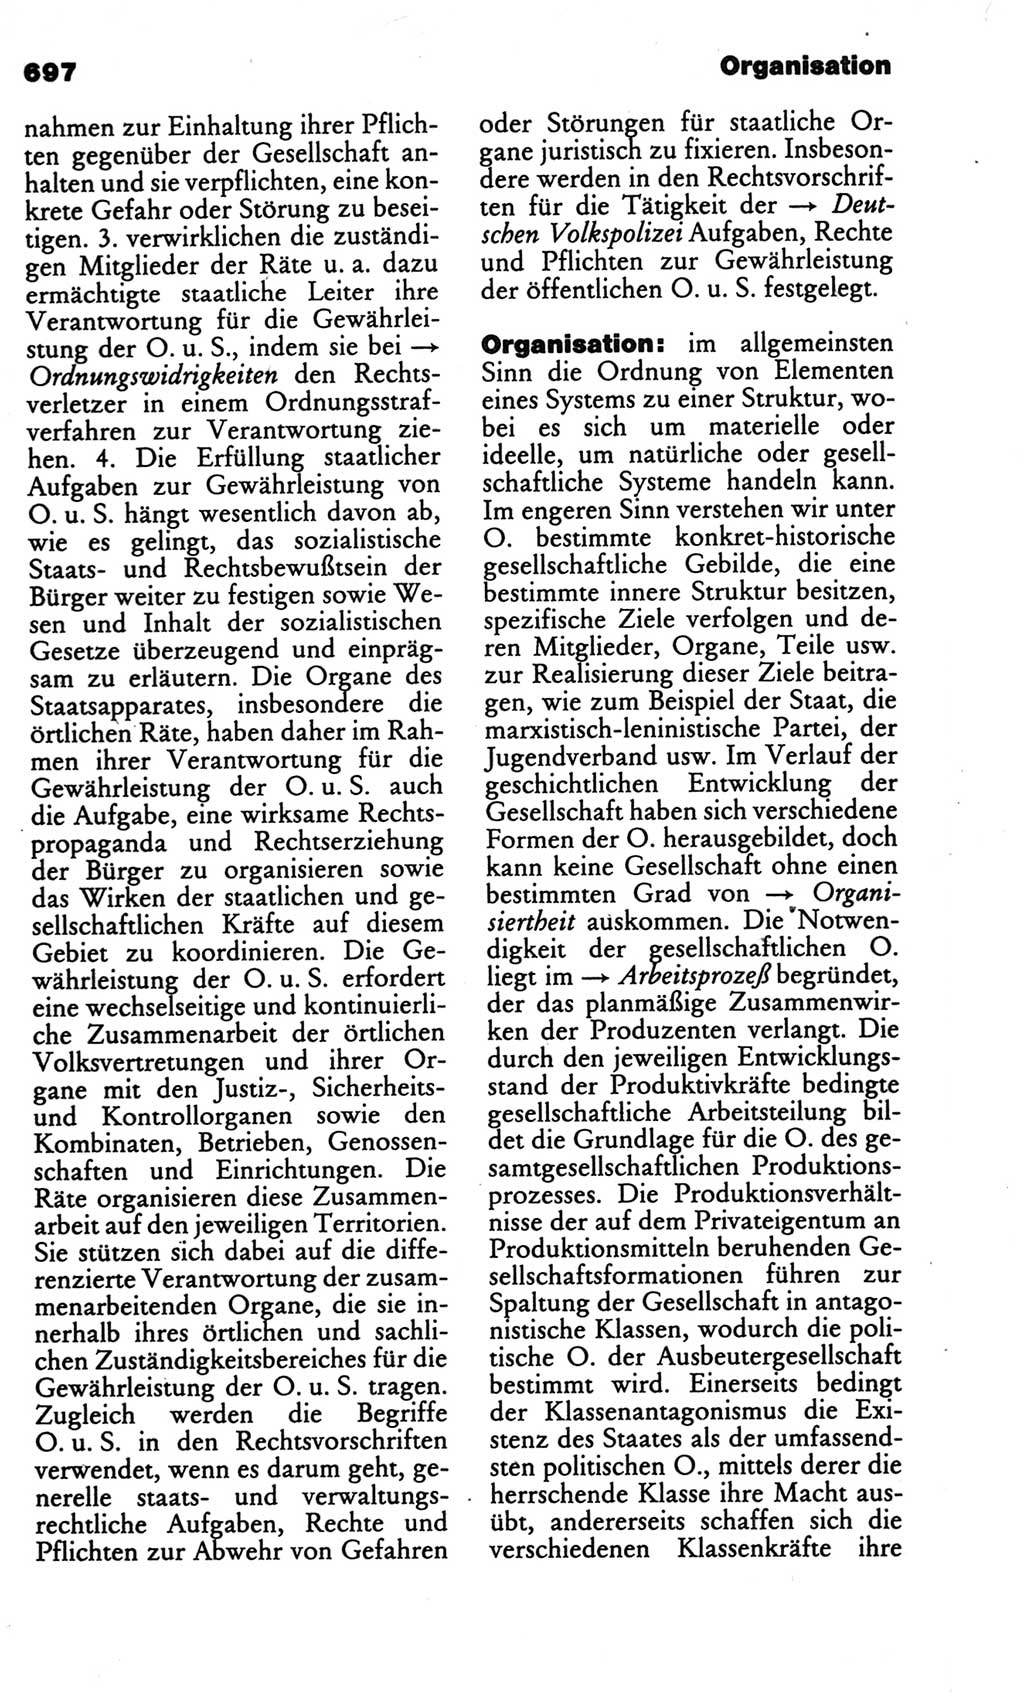 Kleines politisches Wörterbuch [Deutsche Demokratische Republik (DDR)] 1986, Seite 697 (Kl. pol. Wb. DDR 1986, S. 697)